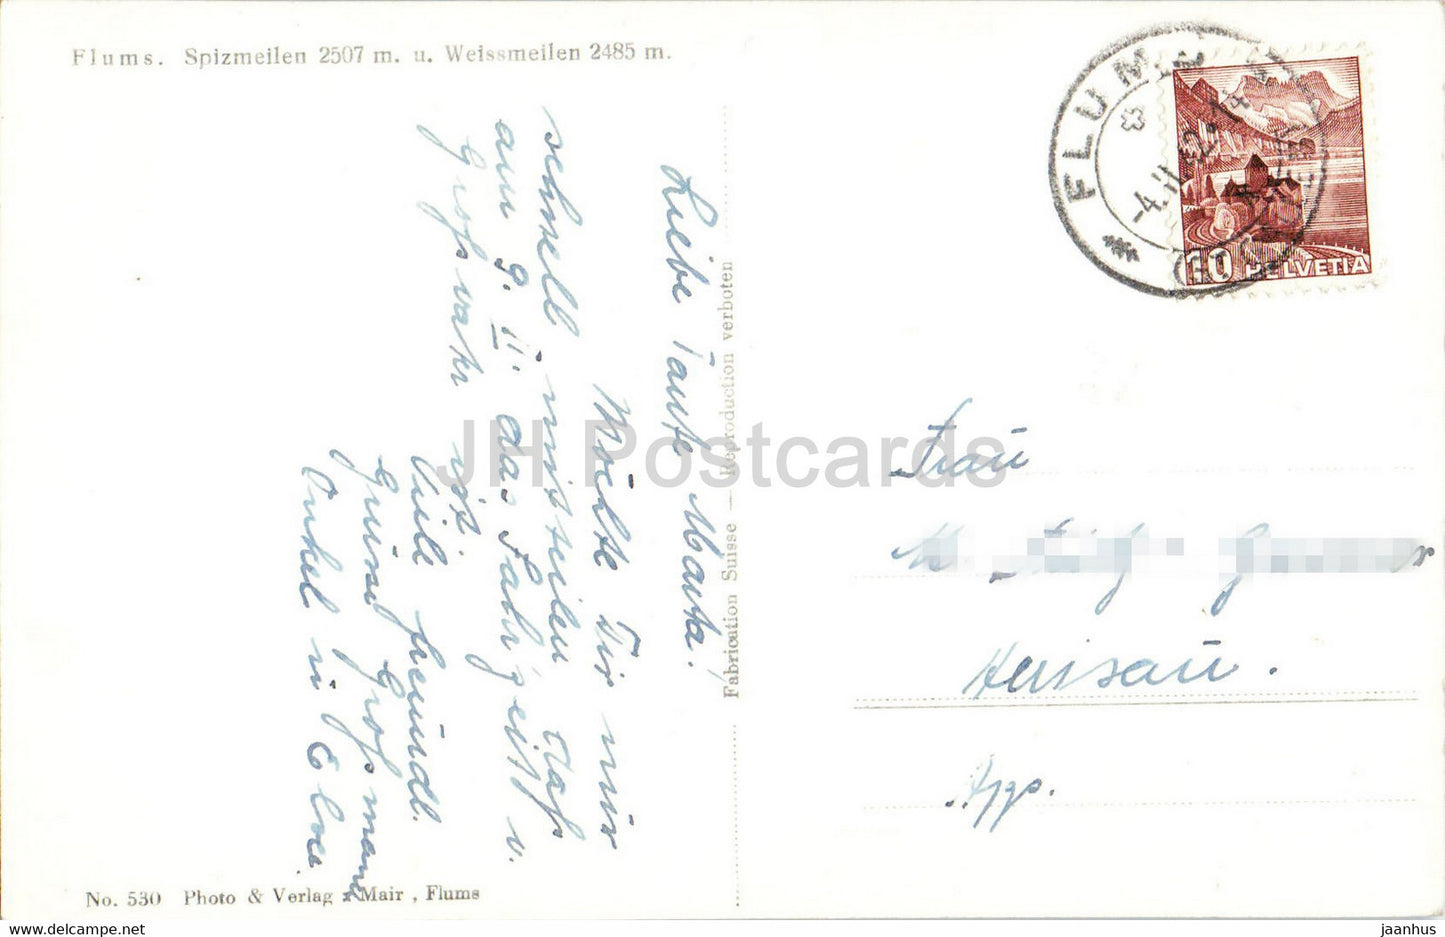 Flums - Spizmeilen 2507 m u Weissmeilen 2485 m - 1942 - old postcard - Switzerland - used